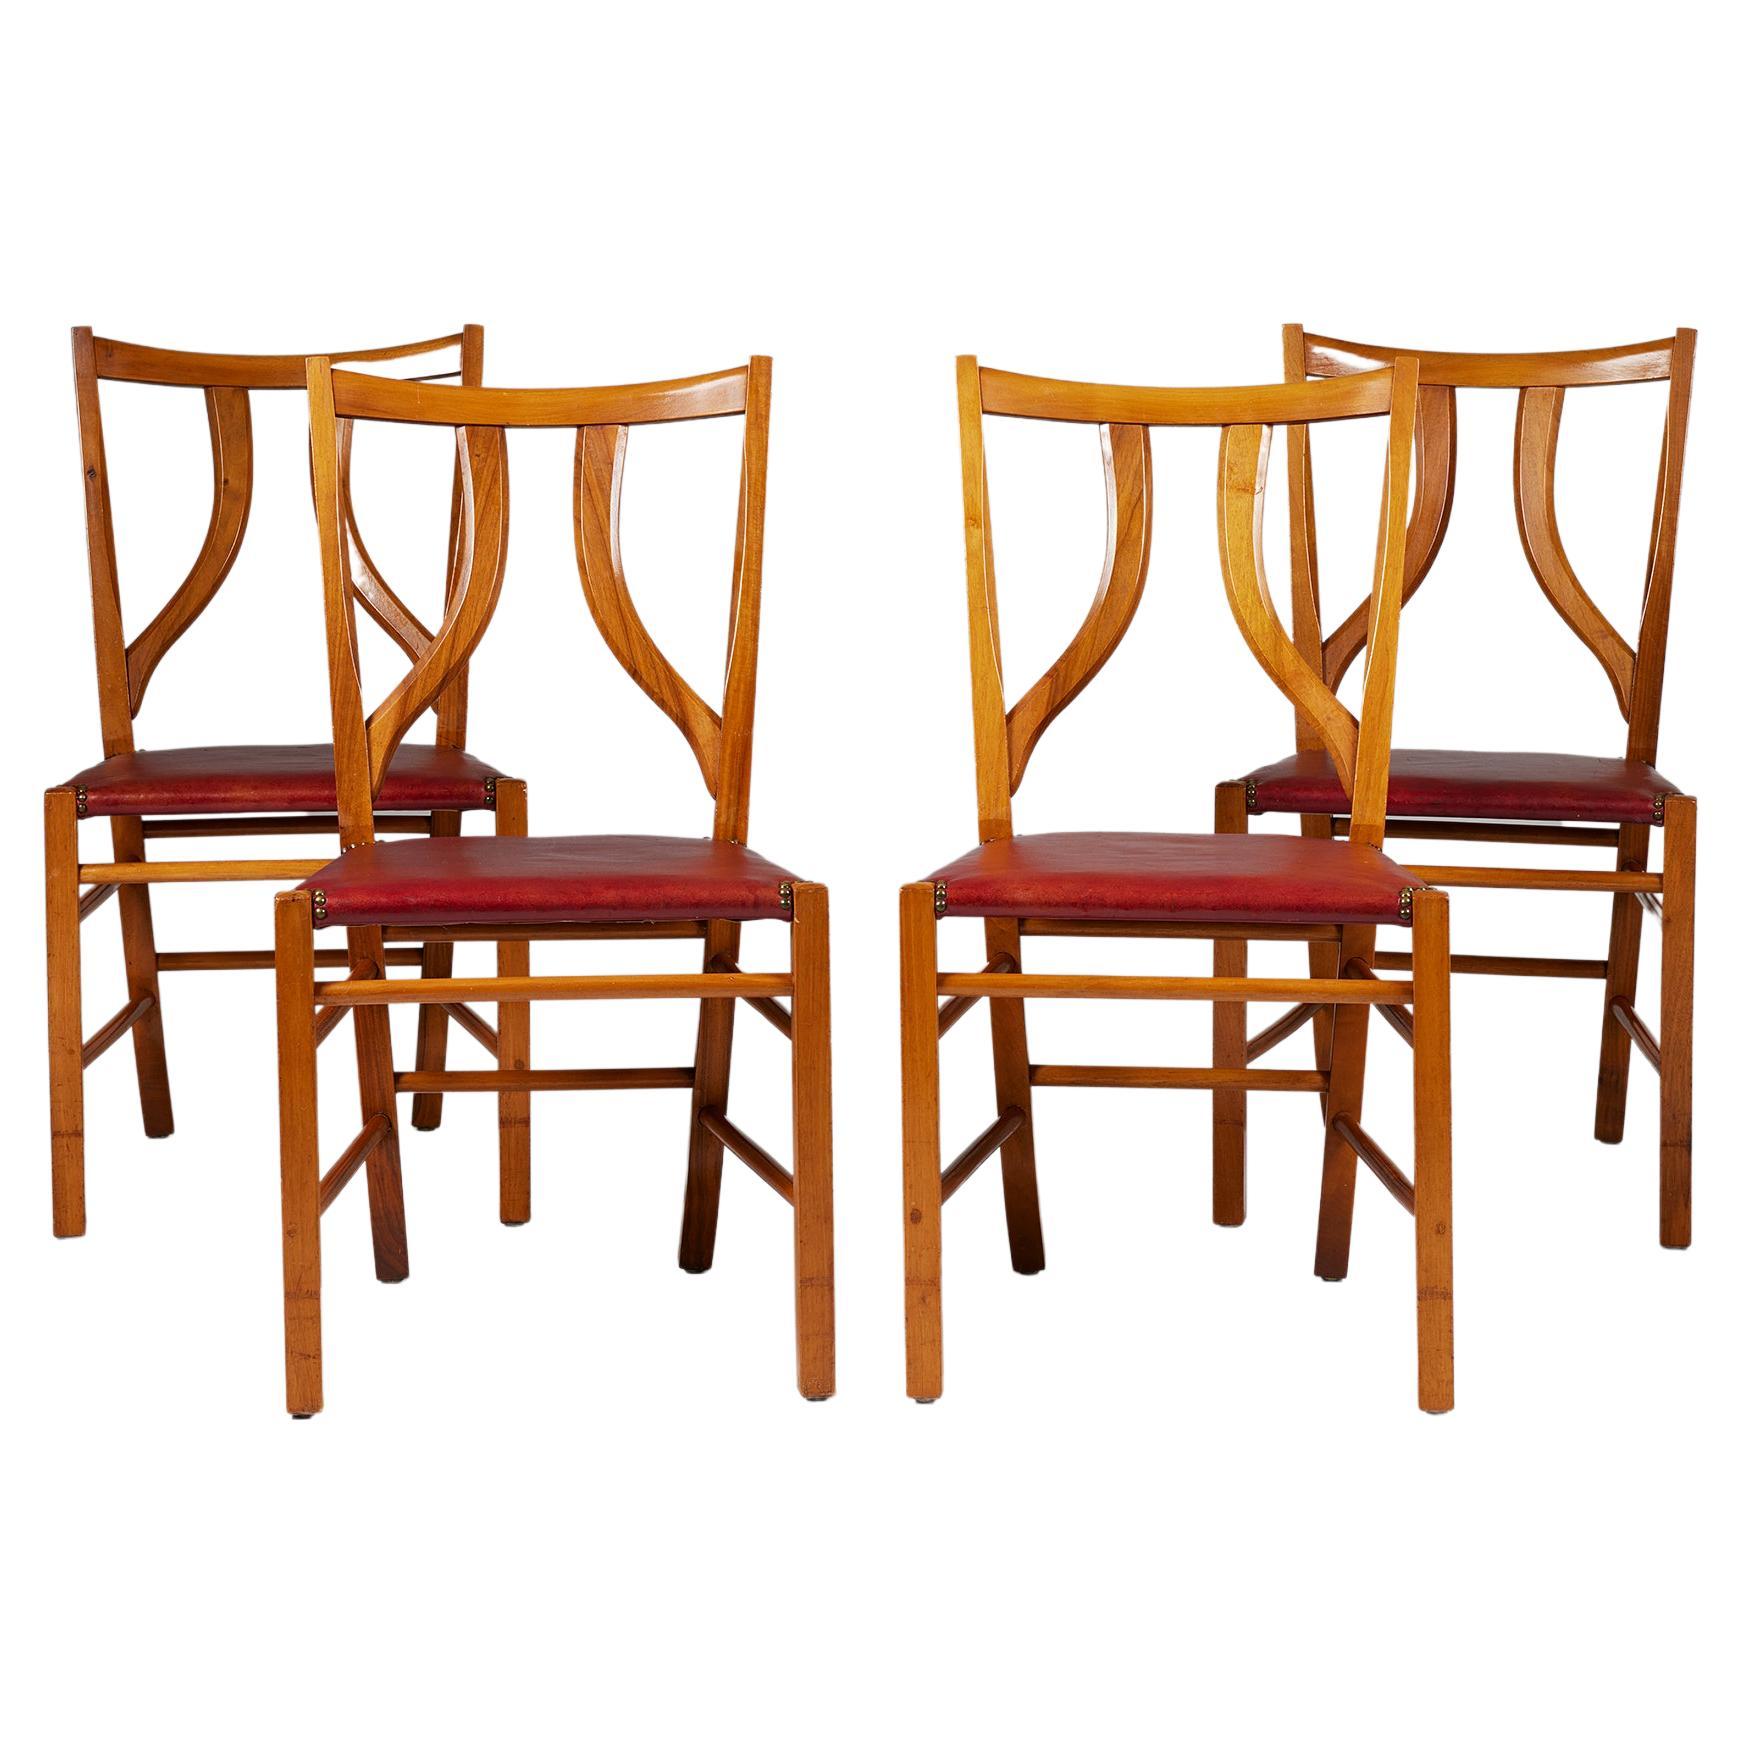 Ensemble de quatre chaises de salle à manger modèle 2027 conçu par Josef Frank pour Svenskt Tenn